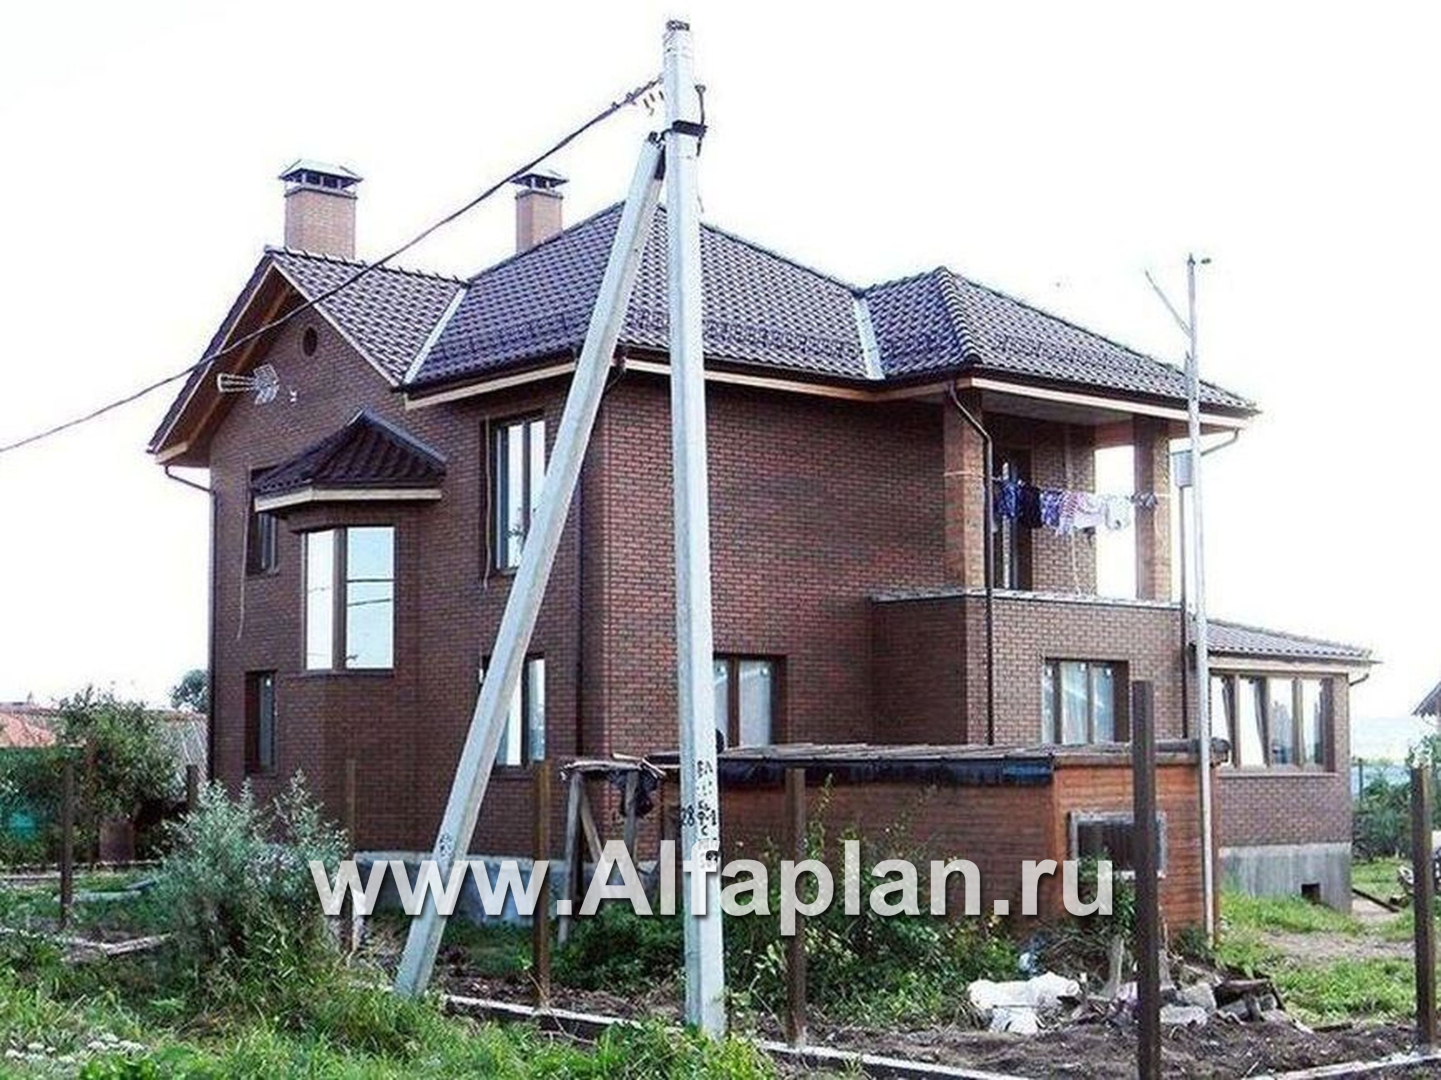 Проекты домов Альфаплан - «Лавиери Плюс»- проект дома с изящным крыльцом и эркером - дополнительное изображение №2